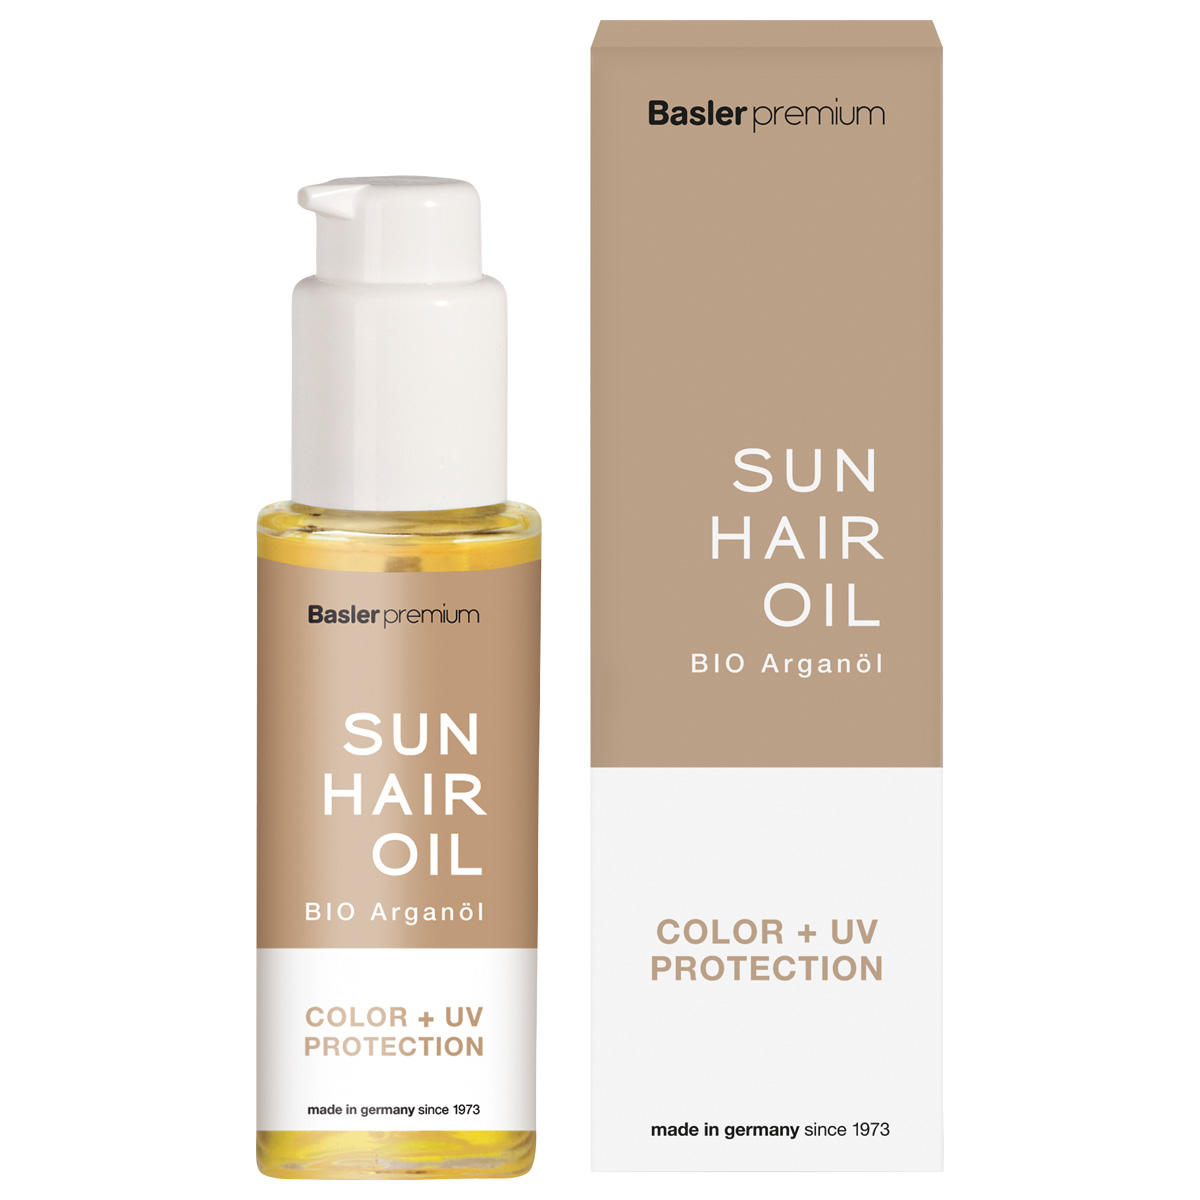 Baslerpremium Sun Hair Oil 50 ml - 3